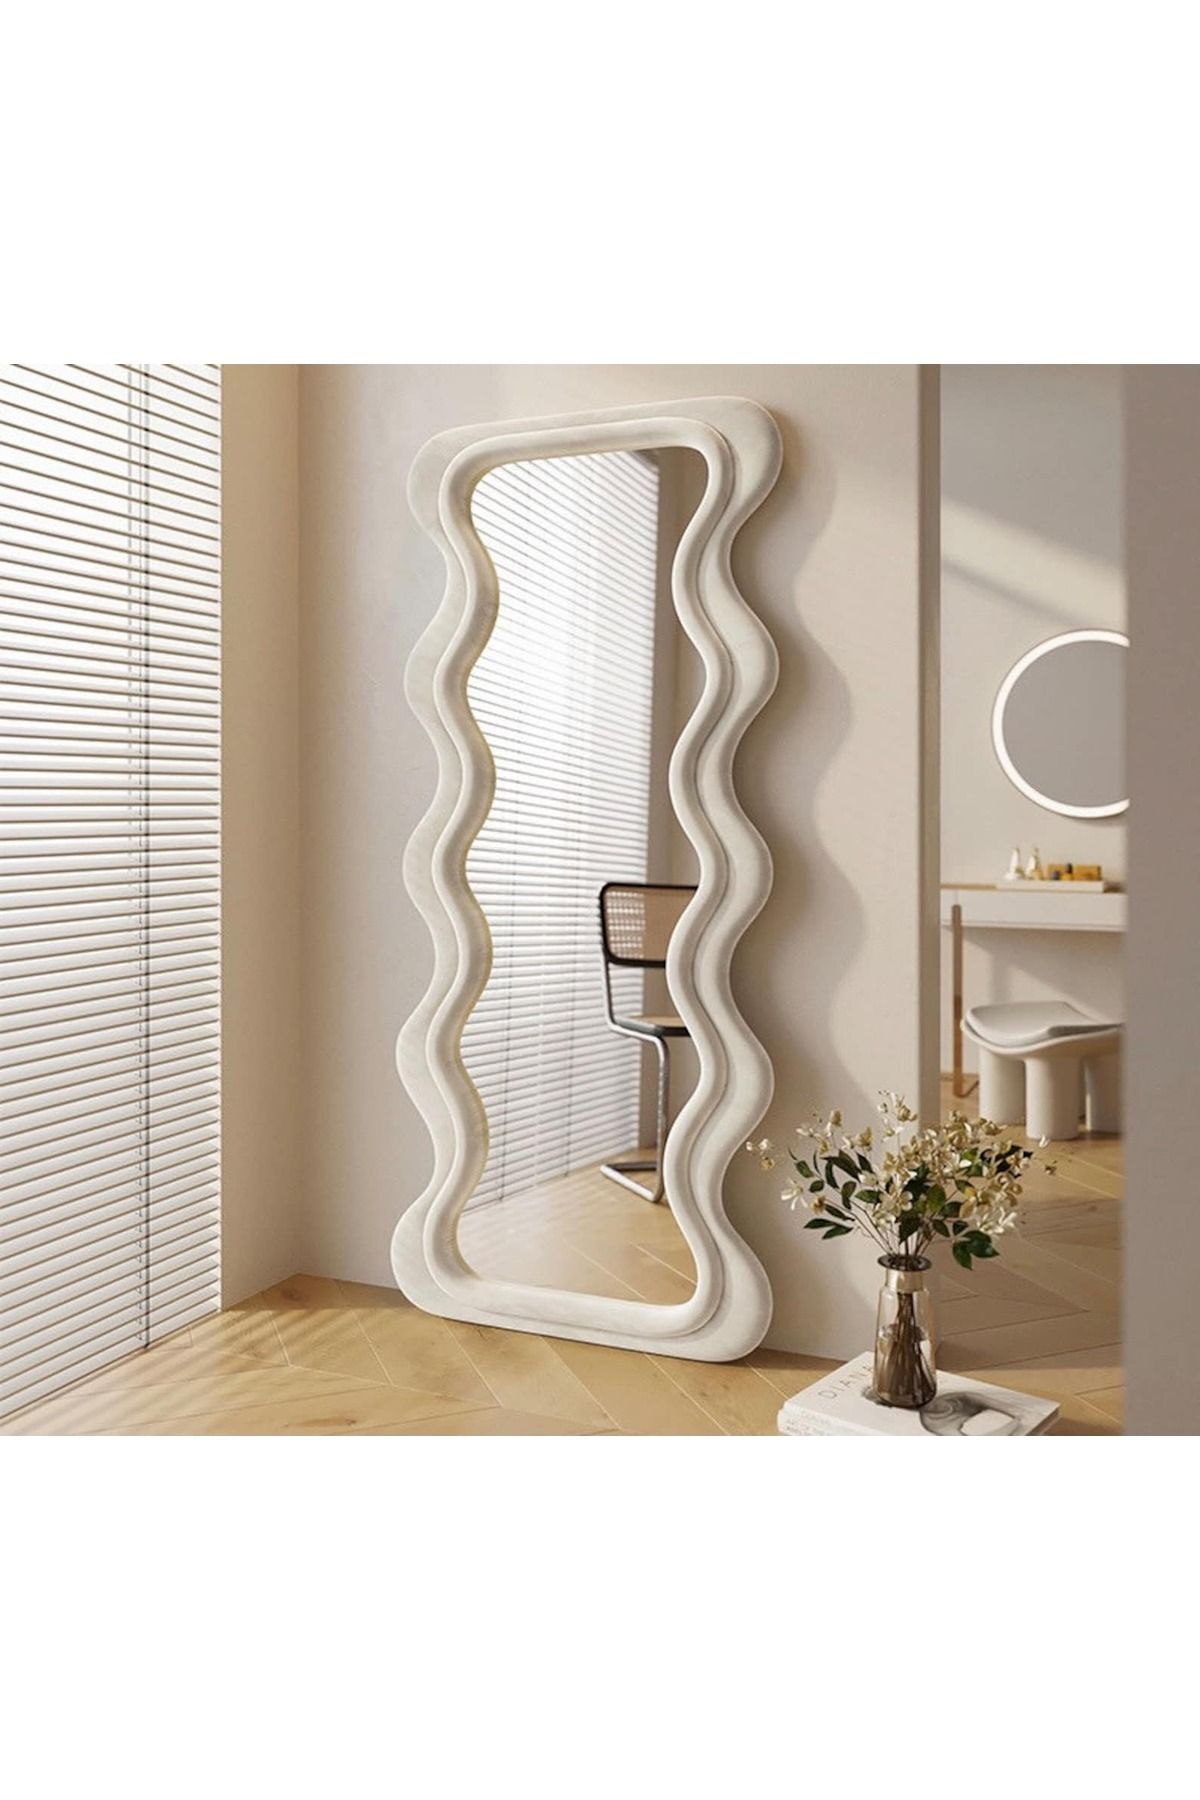 Felicity Mirror 190 cm Kadife Kumaş Çerçeveli Dekoratif Duvar Boy Aynası - Konsol Üstü Salon Aynası